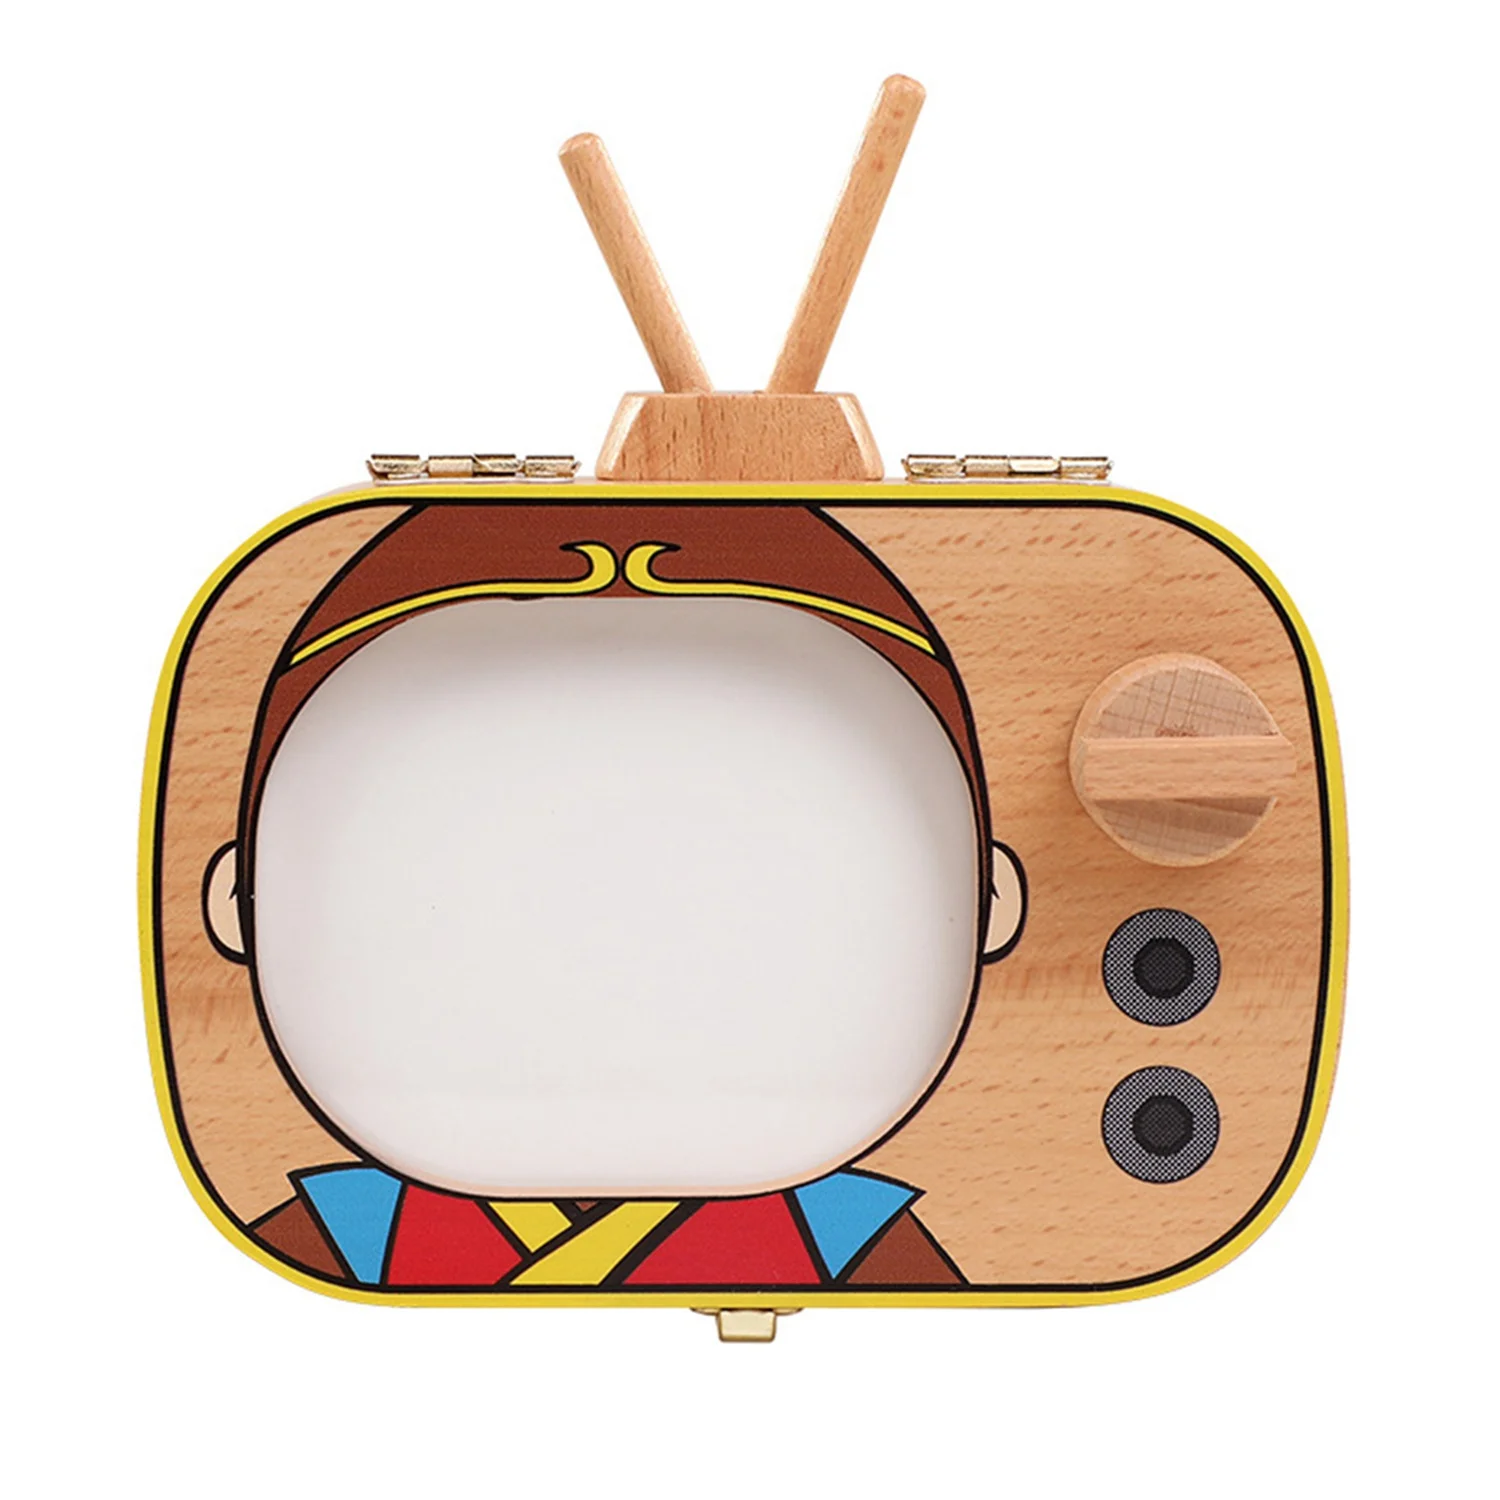 Детская коробка для зуба на память, деревянная коробка для зубов в форме телевизора, коробка для зуба на память, коробка для хранения зуба на память, рекламные подарки для сбора - Цвет: A1